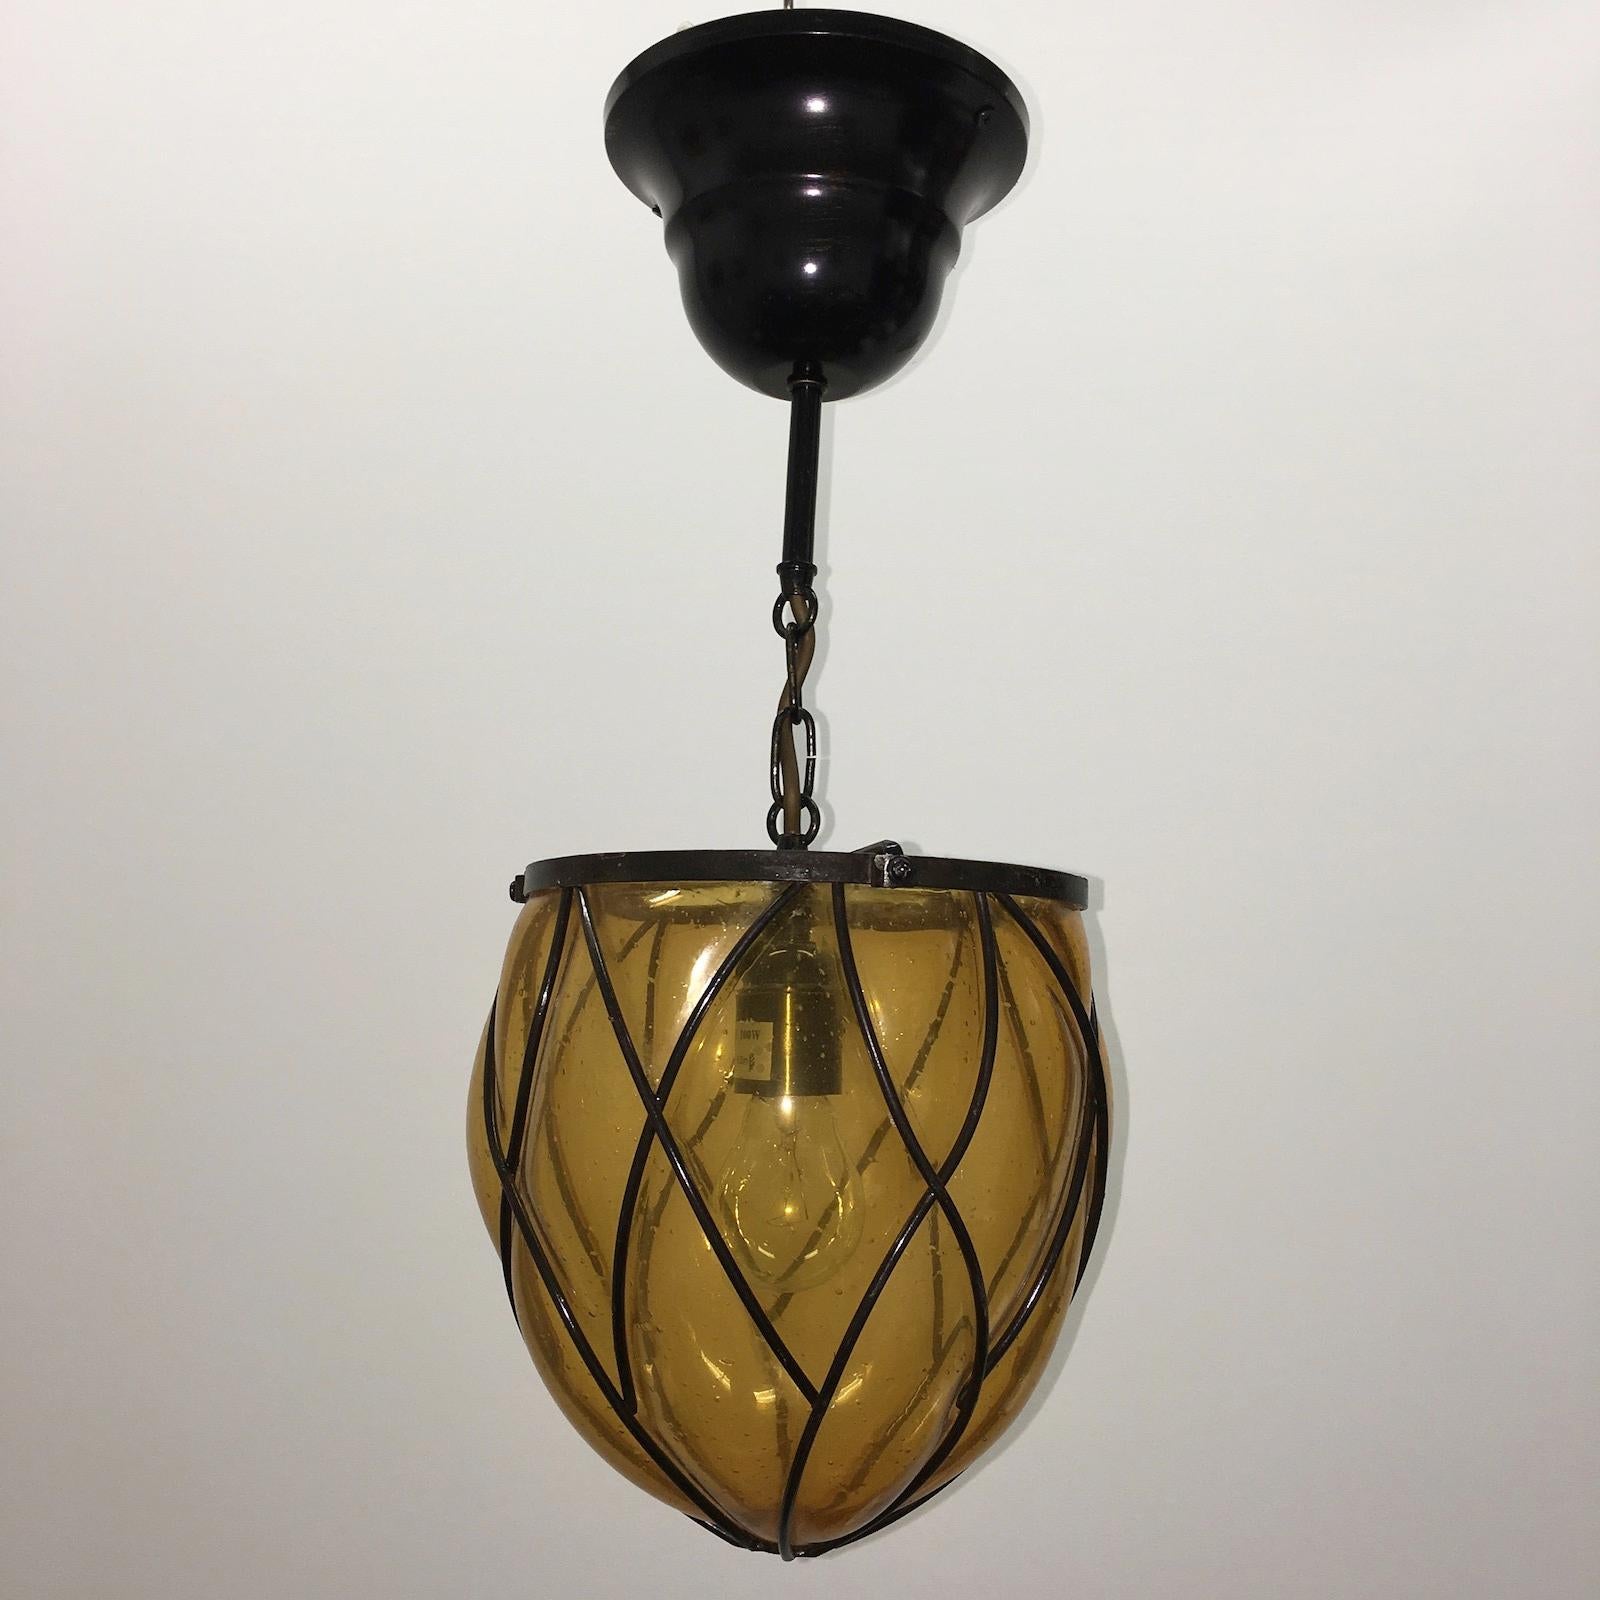 Magnifique lanterne de hall en fer et verre bullé ambré. Une belle addition à chaque maison ou foyer. Ce luminaire est en très bon état, avec des traces d'usure sur le verre et une certaine patine sur le cadre en fer. Le luminaire nécessite une